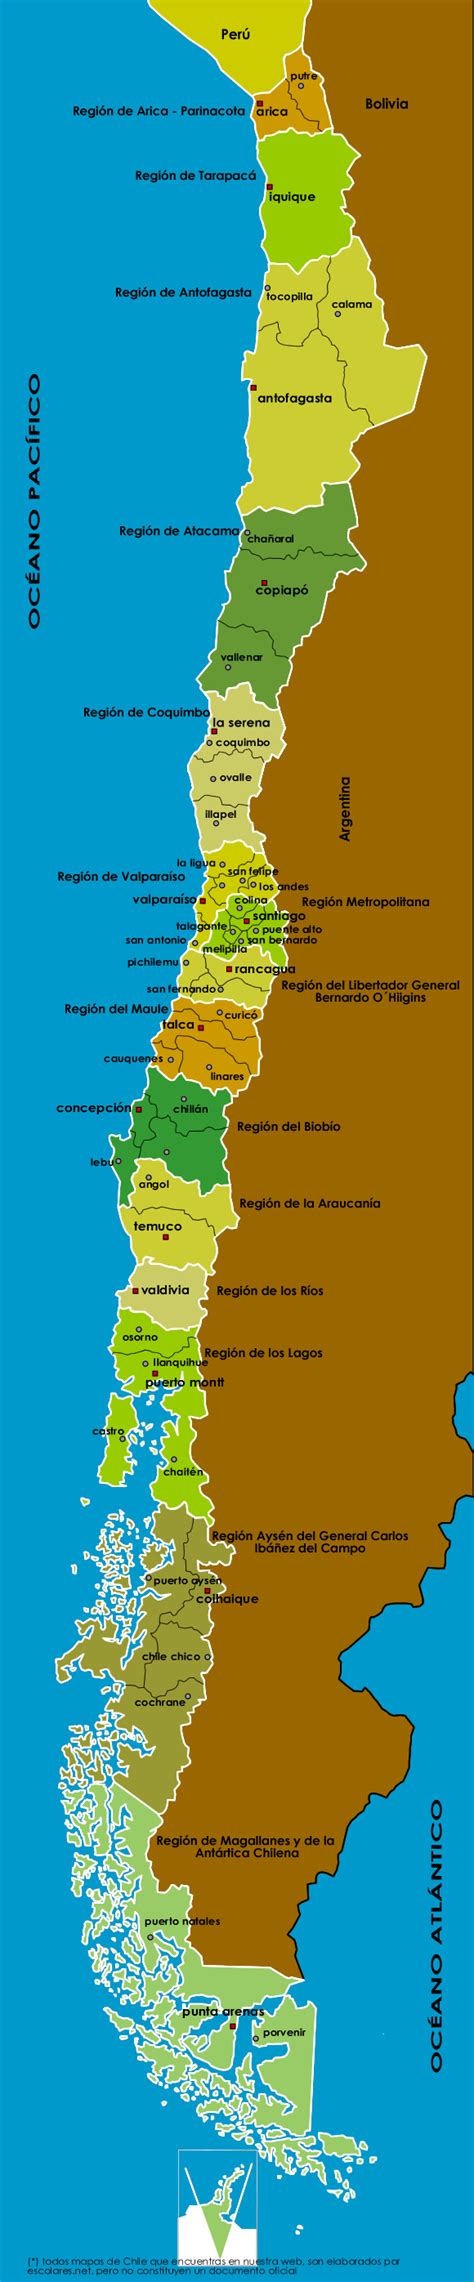 mapa chile regiones y ciudades